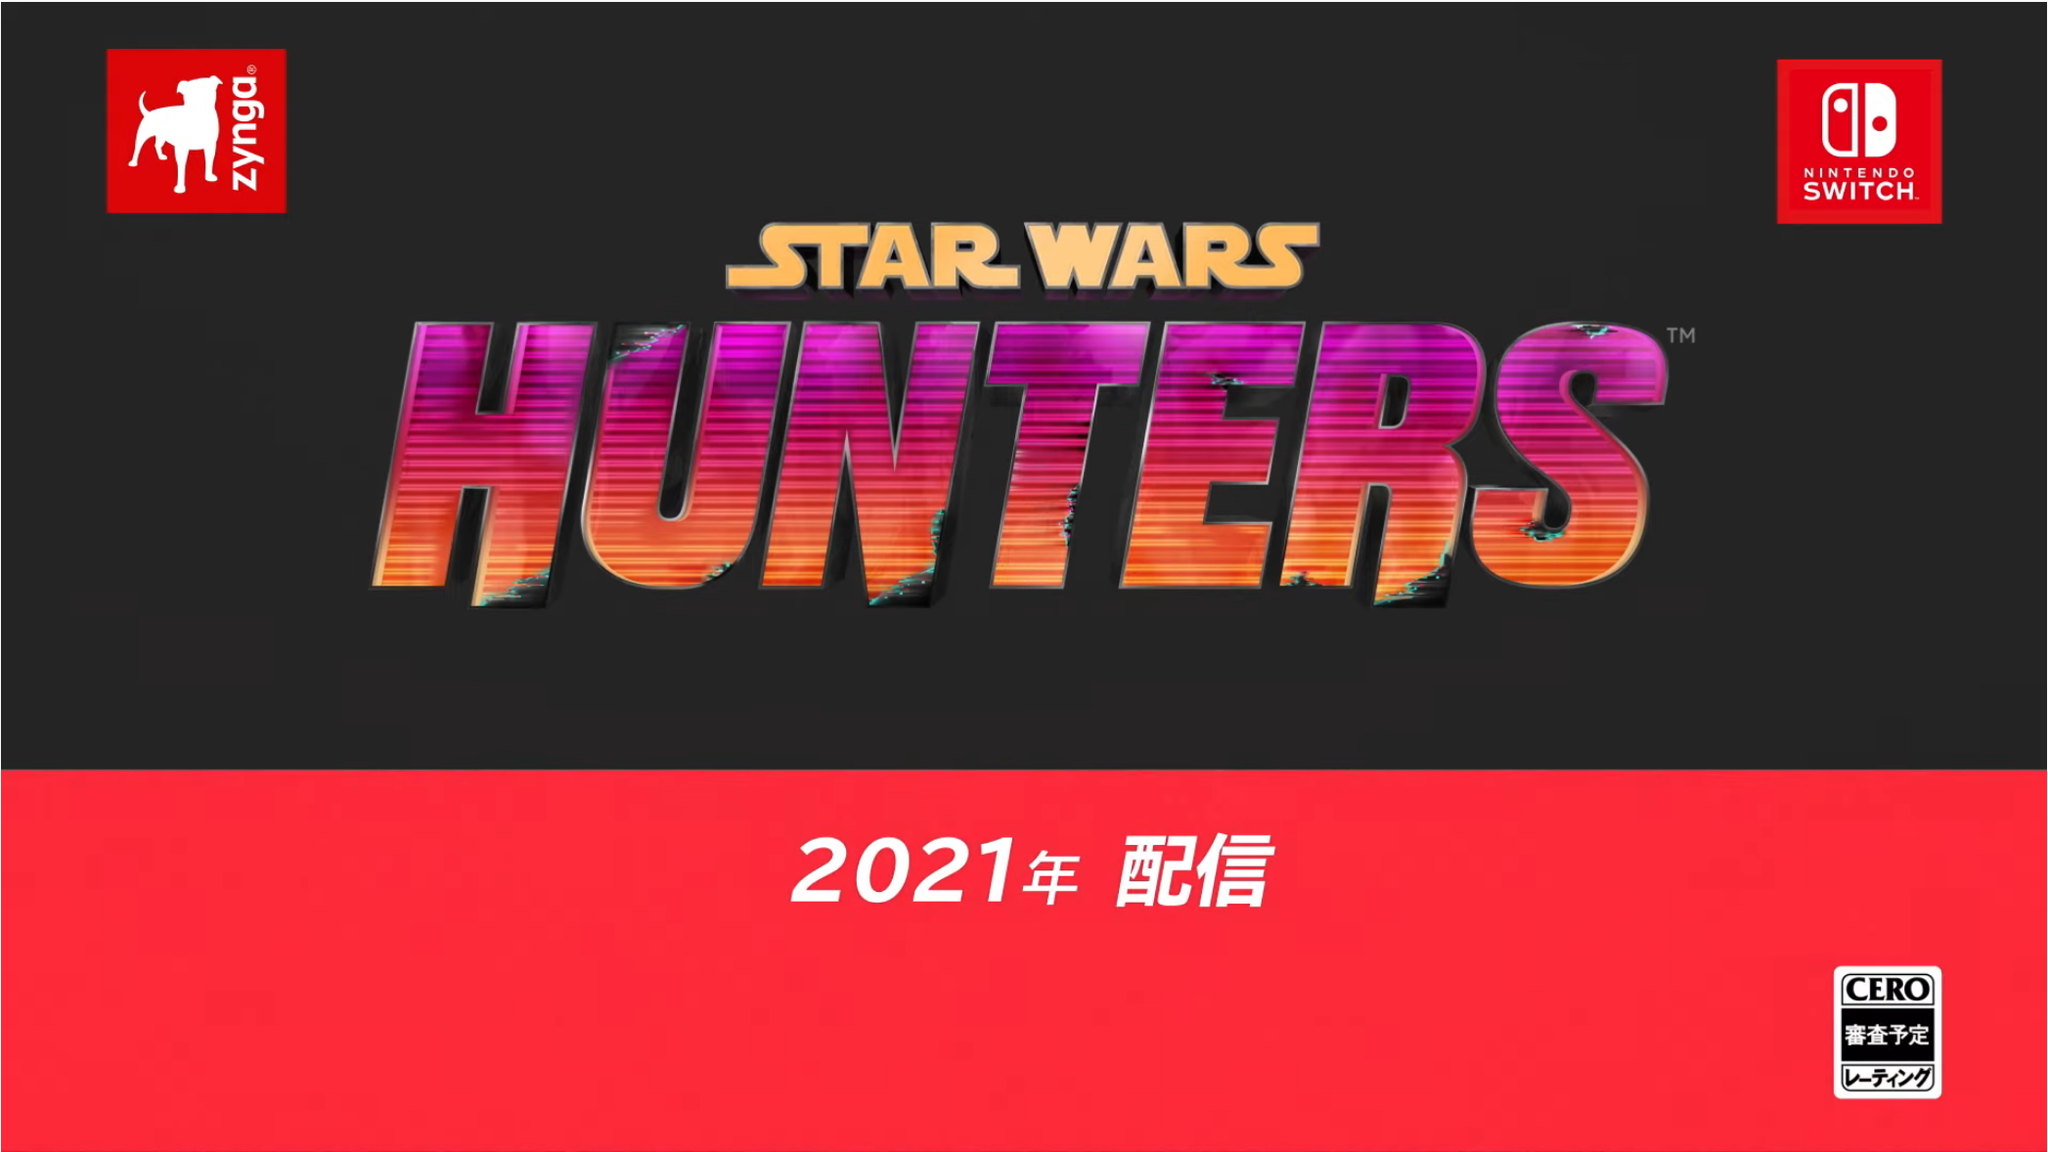 4人vs4人のチームバトル 基本プレイ無料オンラインゲーム Star Wars Hunters がスイッチ向けに発表 インサイド